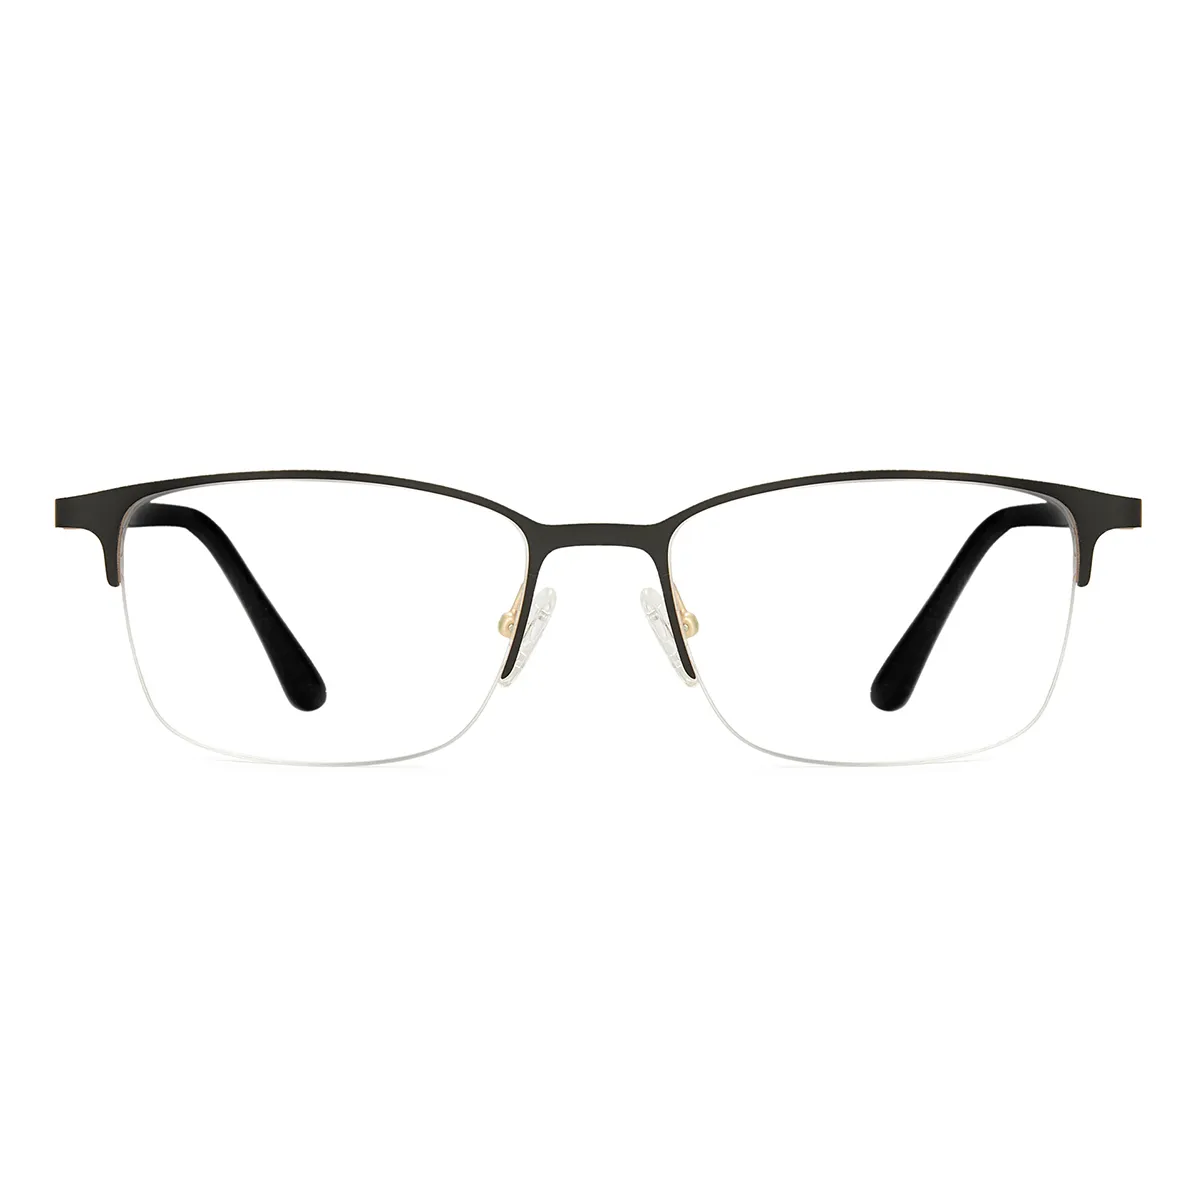 Business Rectangle Black-Gold  Reading Glasses for Men